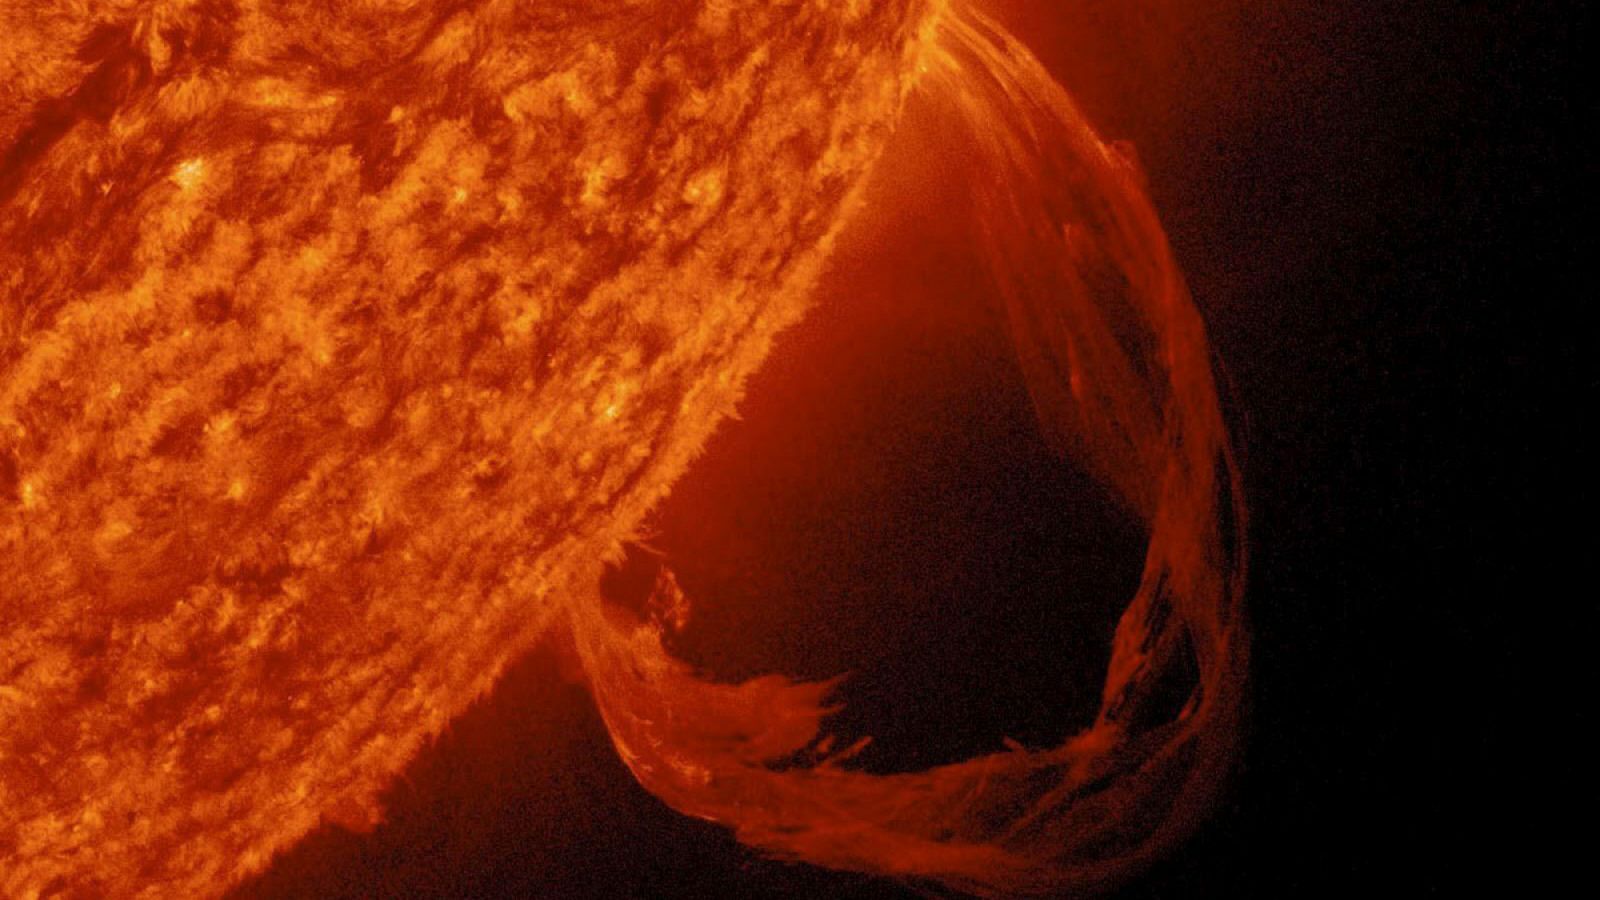 Las erupciones solares son explosiones masivas que arrojan millones de toneladas de gas de plasma y radiación en el espacio.